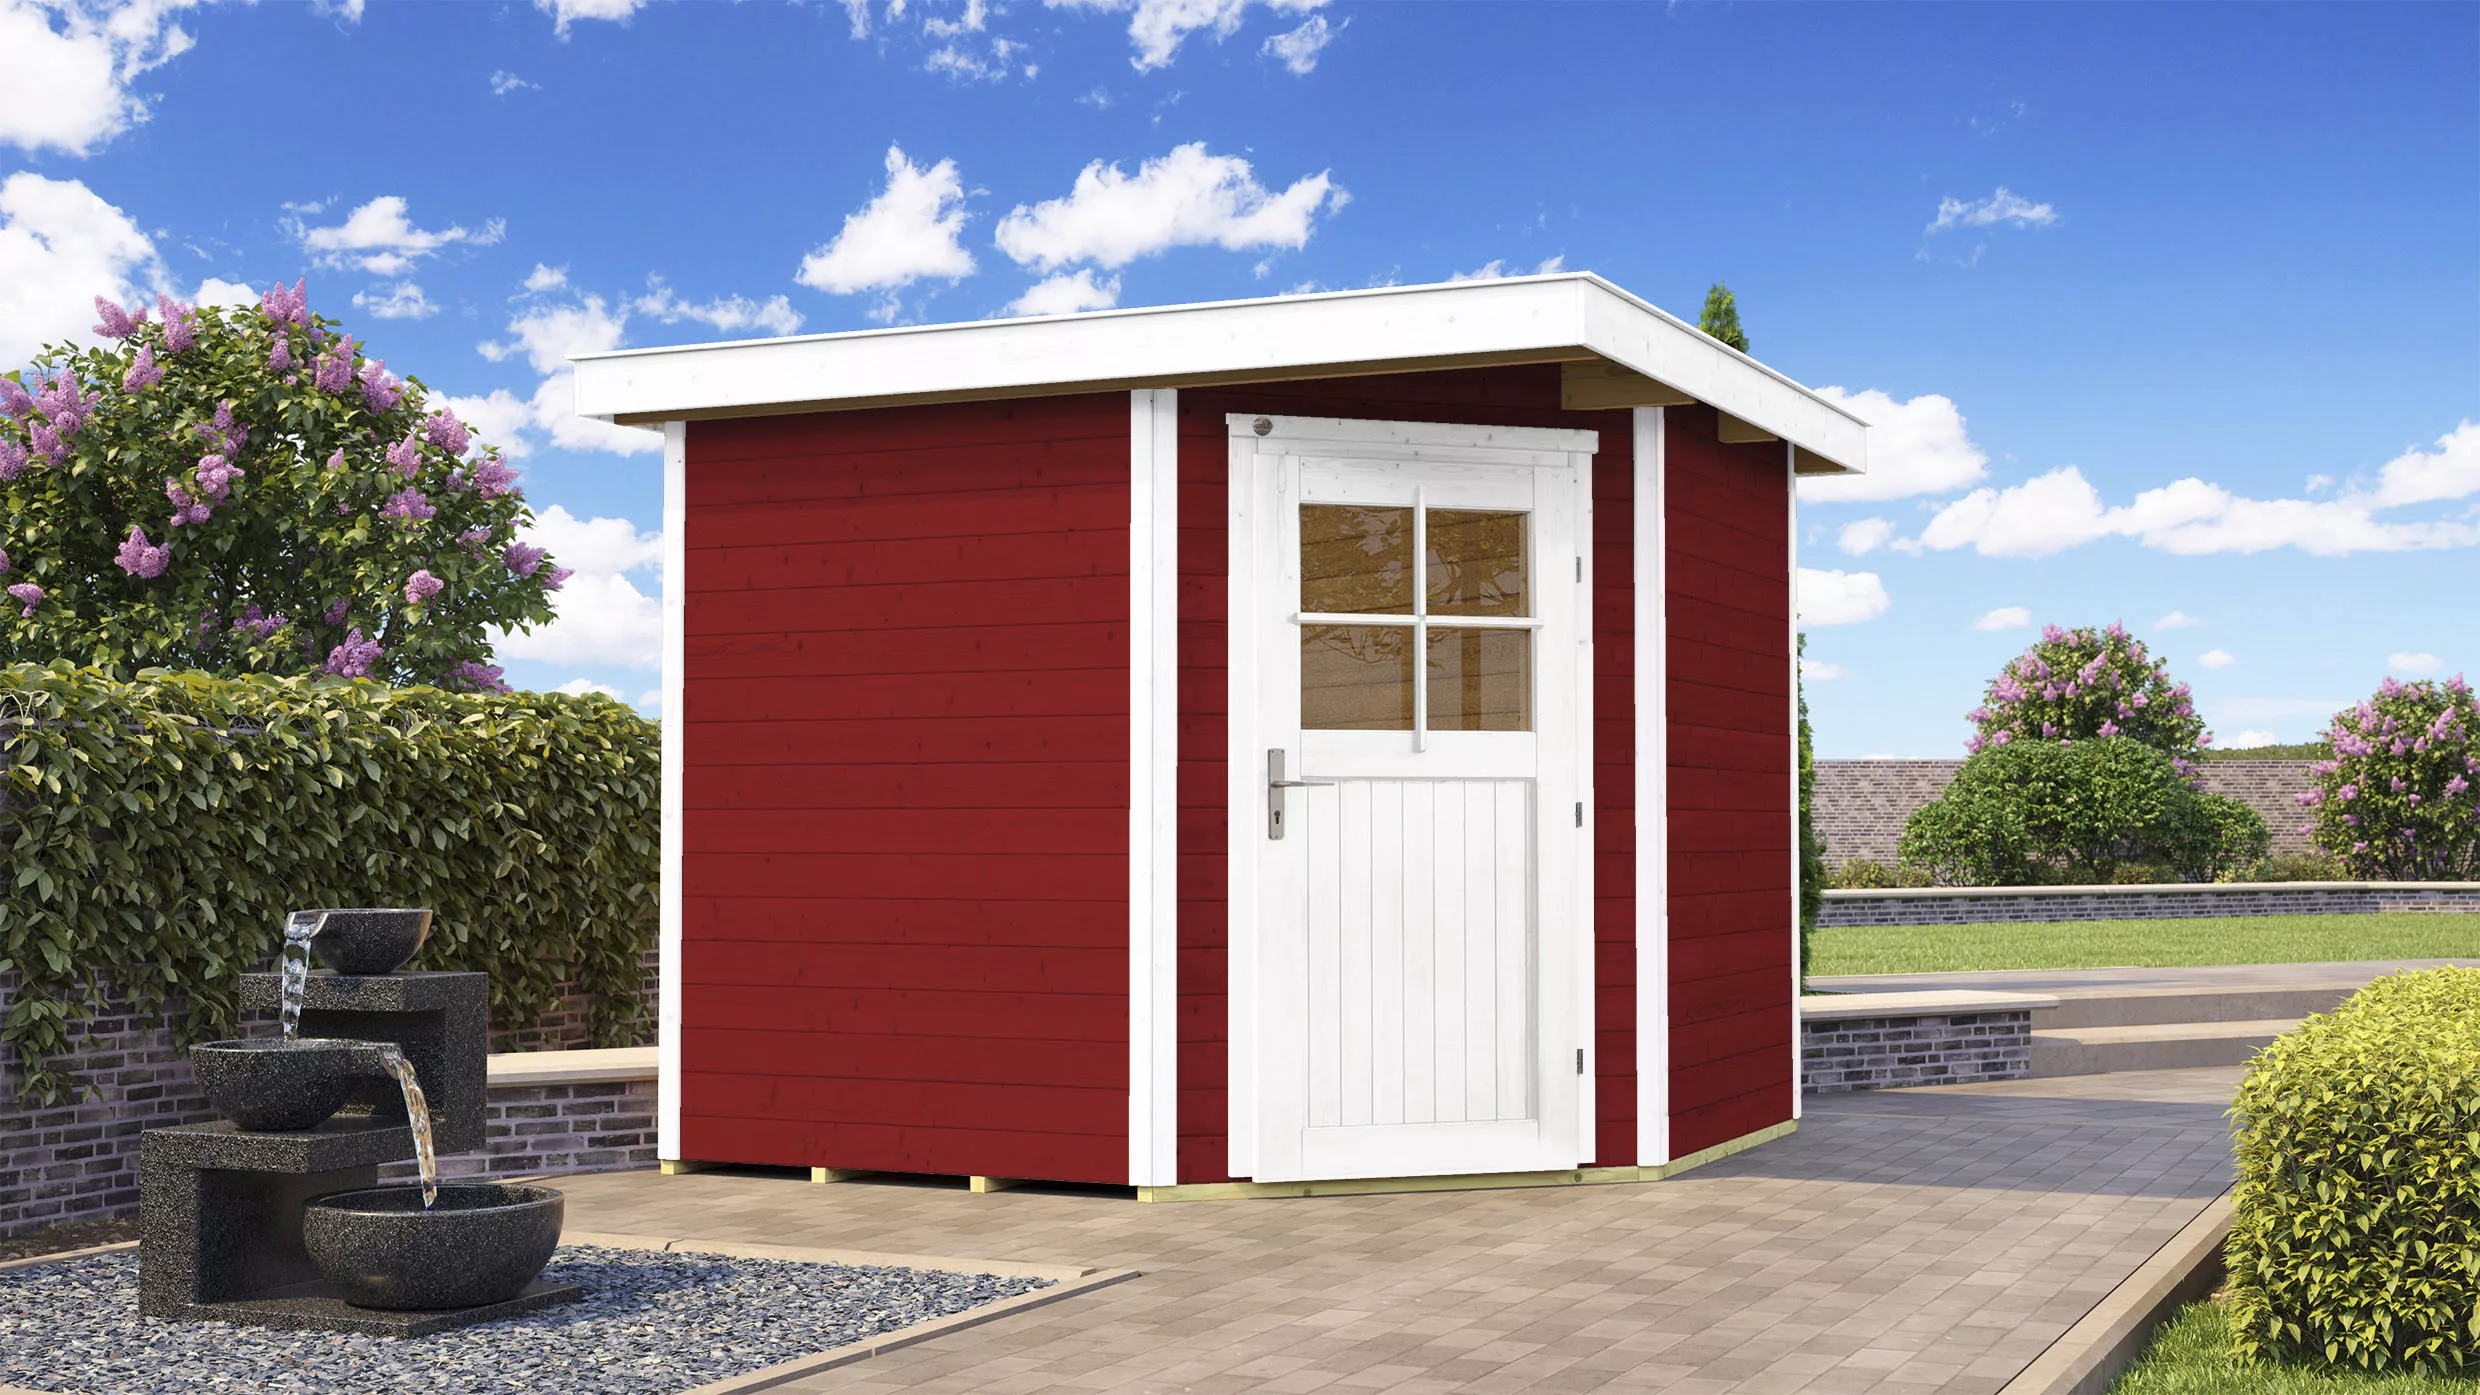 Weka Holz-Gartenhaus Angolo B Schwedenrot-Weiß BxT: 239 cm x 235 cm günstig online kaufen